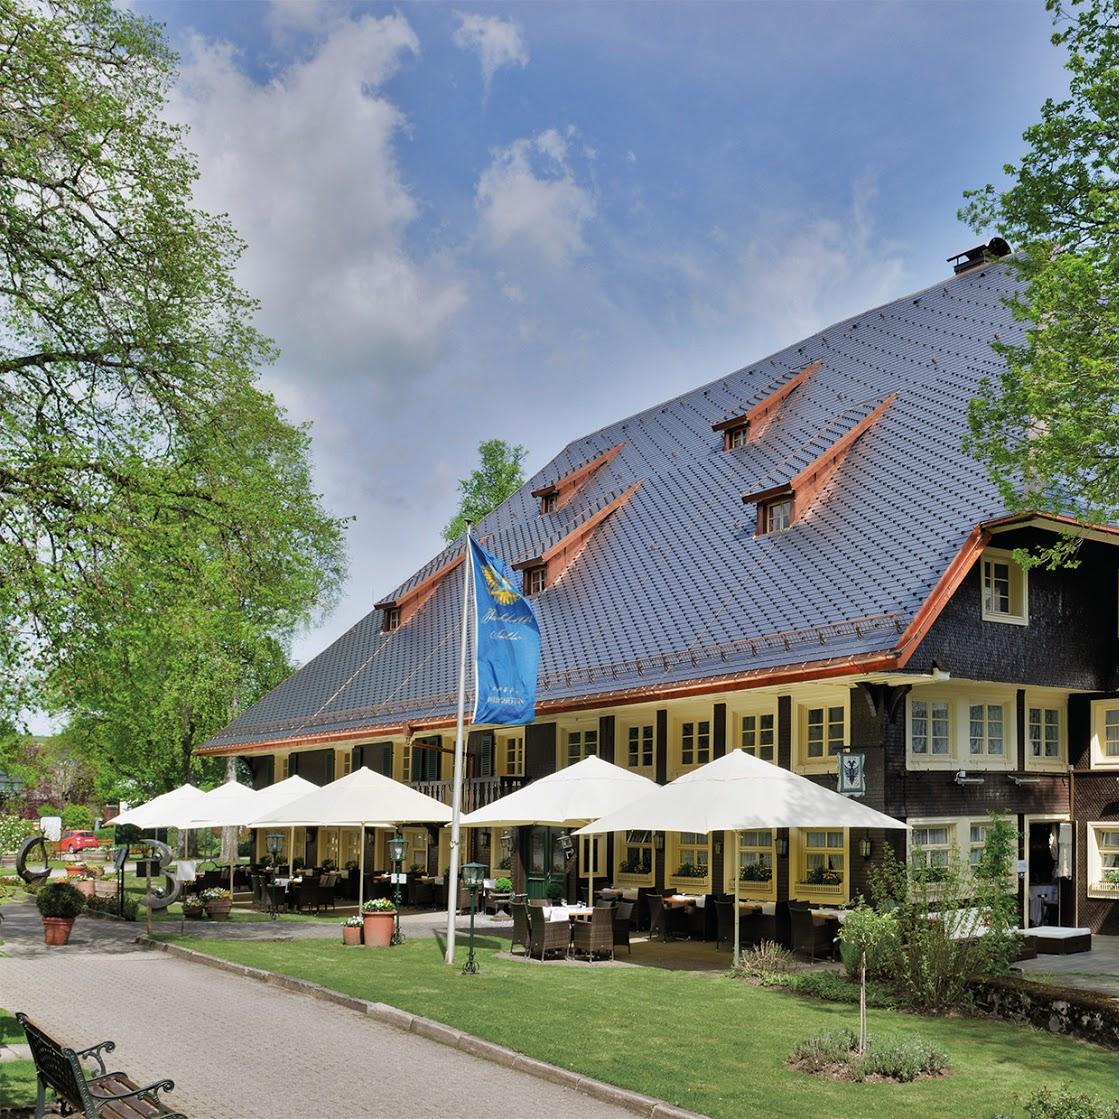 Restaurant "Parkhotel Adler" in Hinterzarten